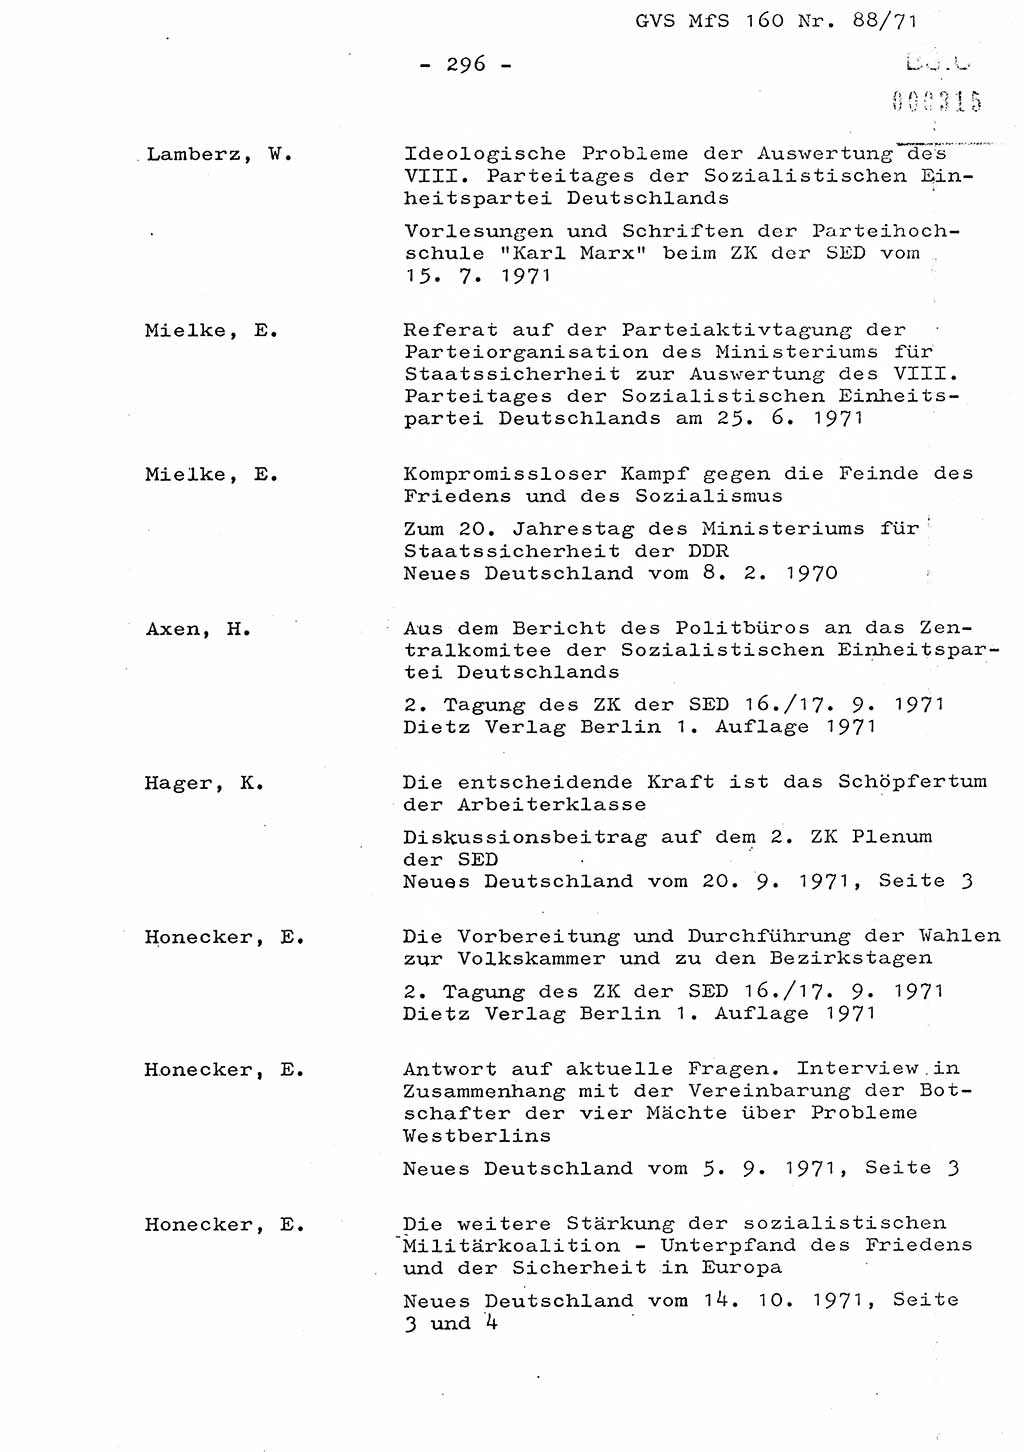 Dissertation Oberstleutnant Josef Schwarz (BV Schwerin), Major Fritz Amm (JHS), Hauptmann Peter Gräßler (JHS), Ministerium für Staatssicherheit (MfS) [Deutsche Demokratische Republik (DDR)], Juristische Hochschule (JHS), Geheime Verschlußsache (GVS) 160-88/71, Potsdam 1972, Seite 296 (Diss. MfS DDR JHS GVS 160-88/71 1972, S. 296)